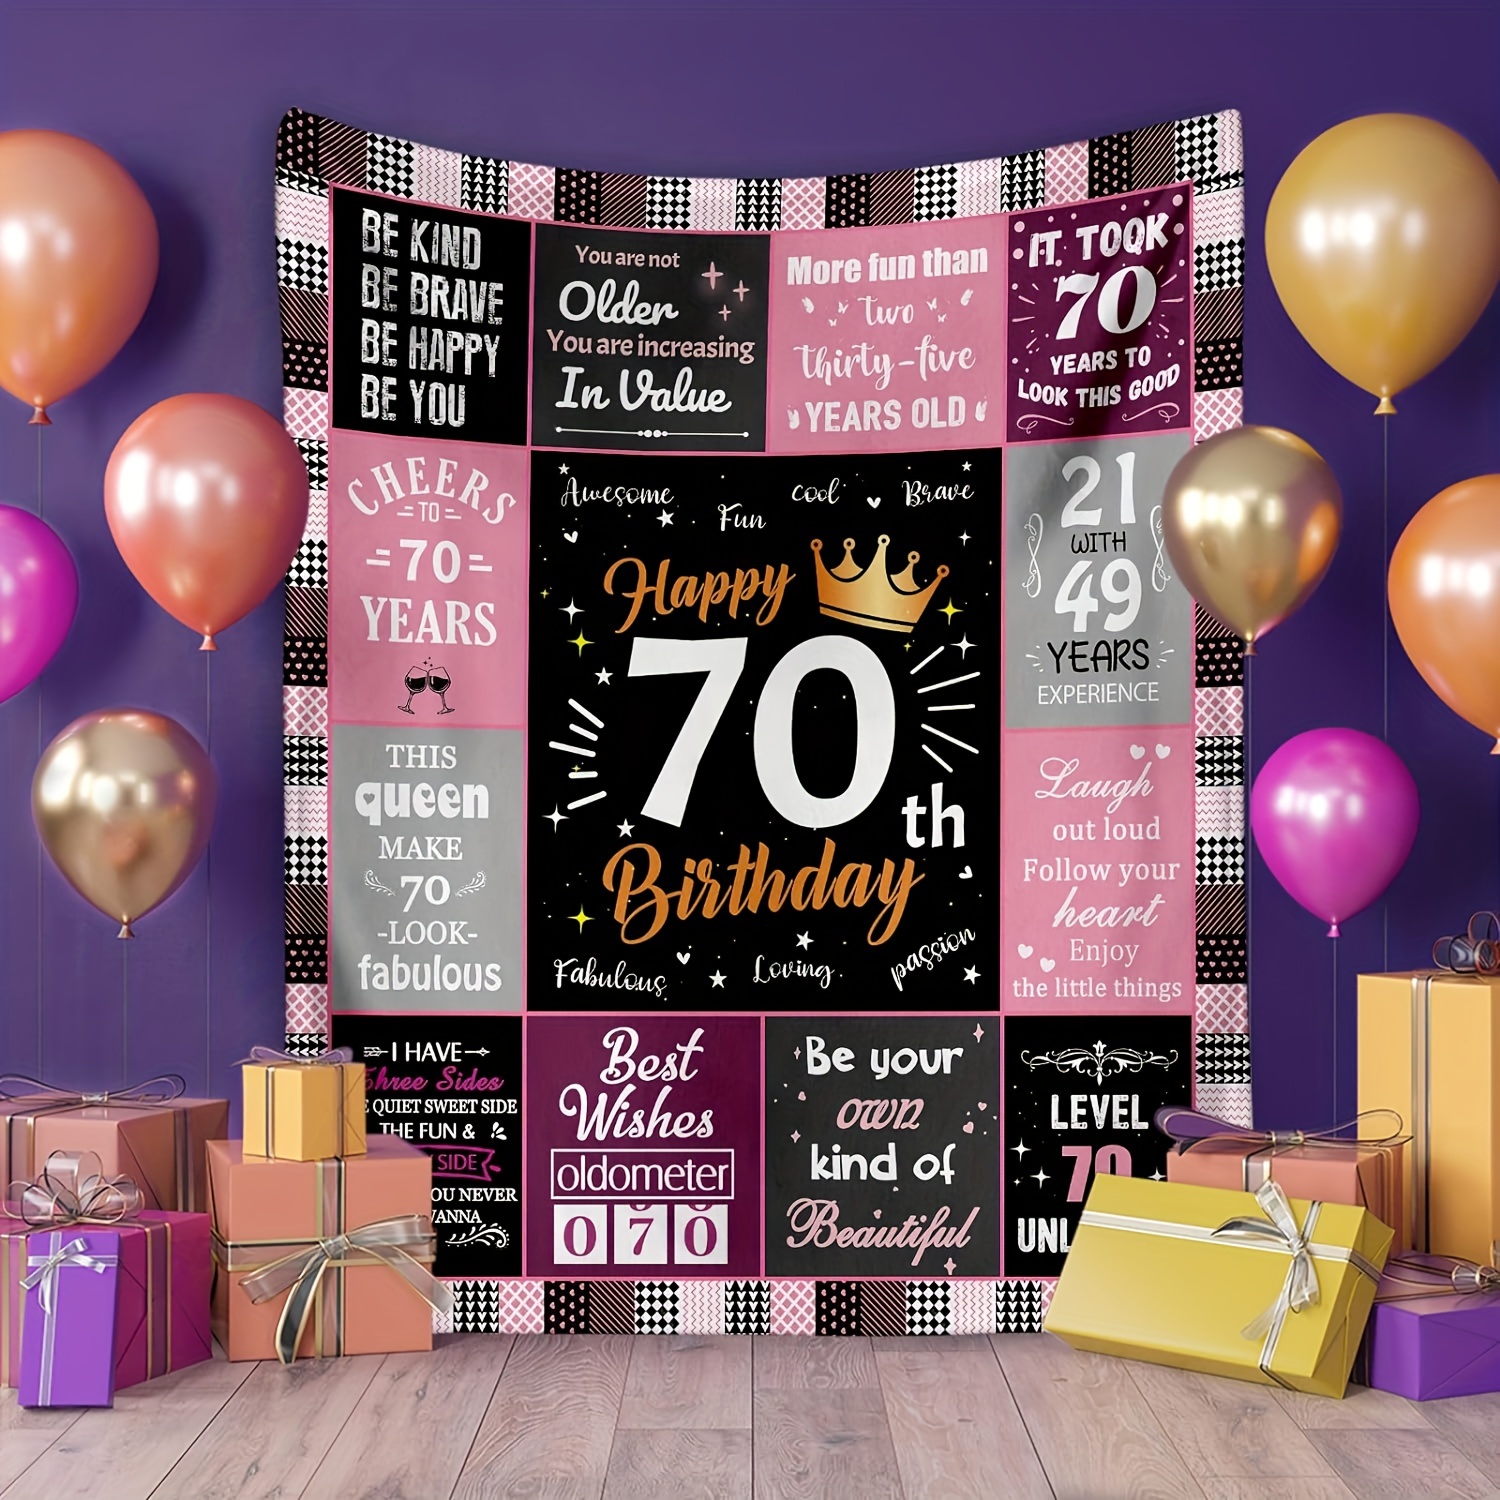  Regalos de cumpleaños 50 para mujeres, regalos divertidos para  50 cumpleaños para mujeres que cumplen 50 años, regalos de feliz cumpleaños  de 50 años para mamá, abuela, esposa, hermana, damas, amiga 